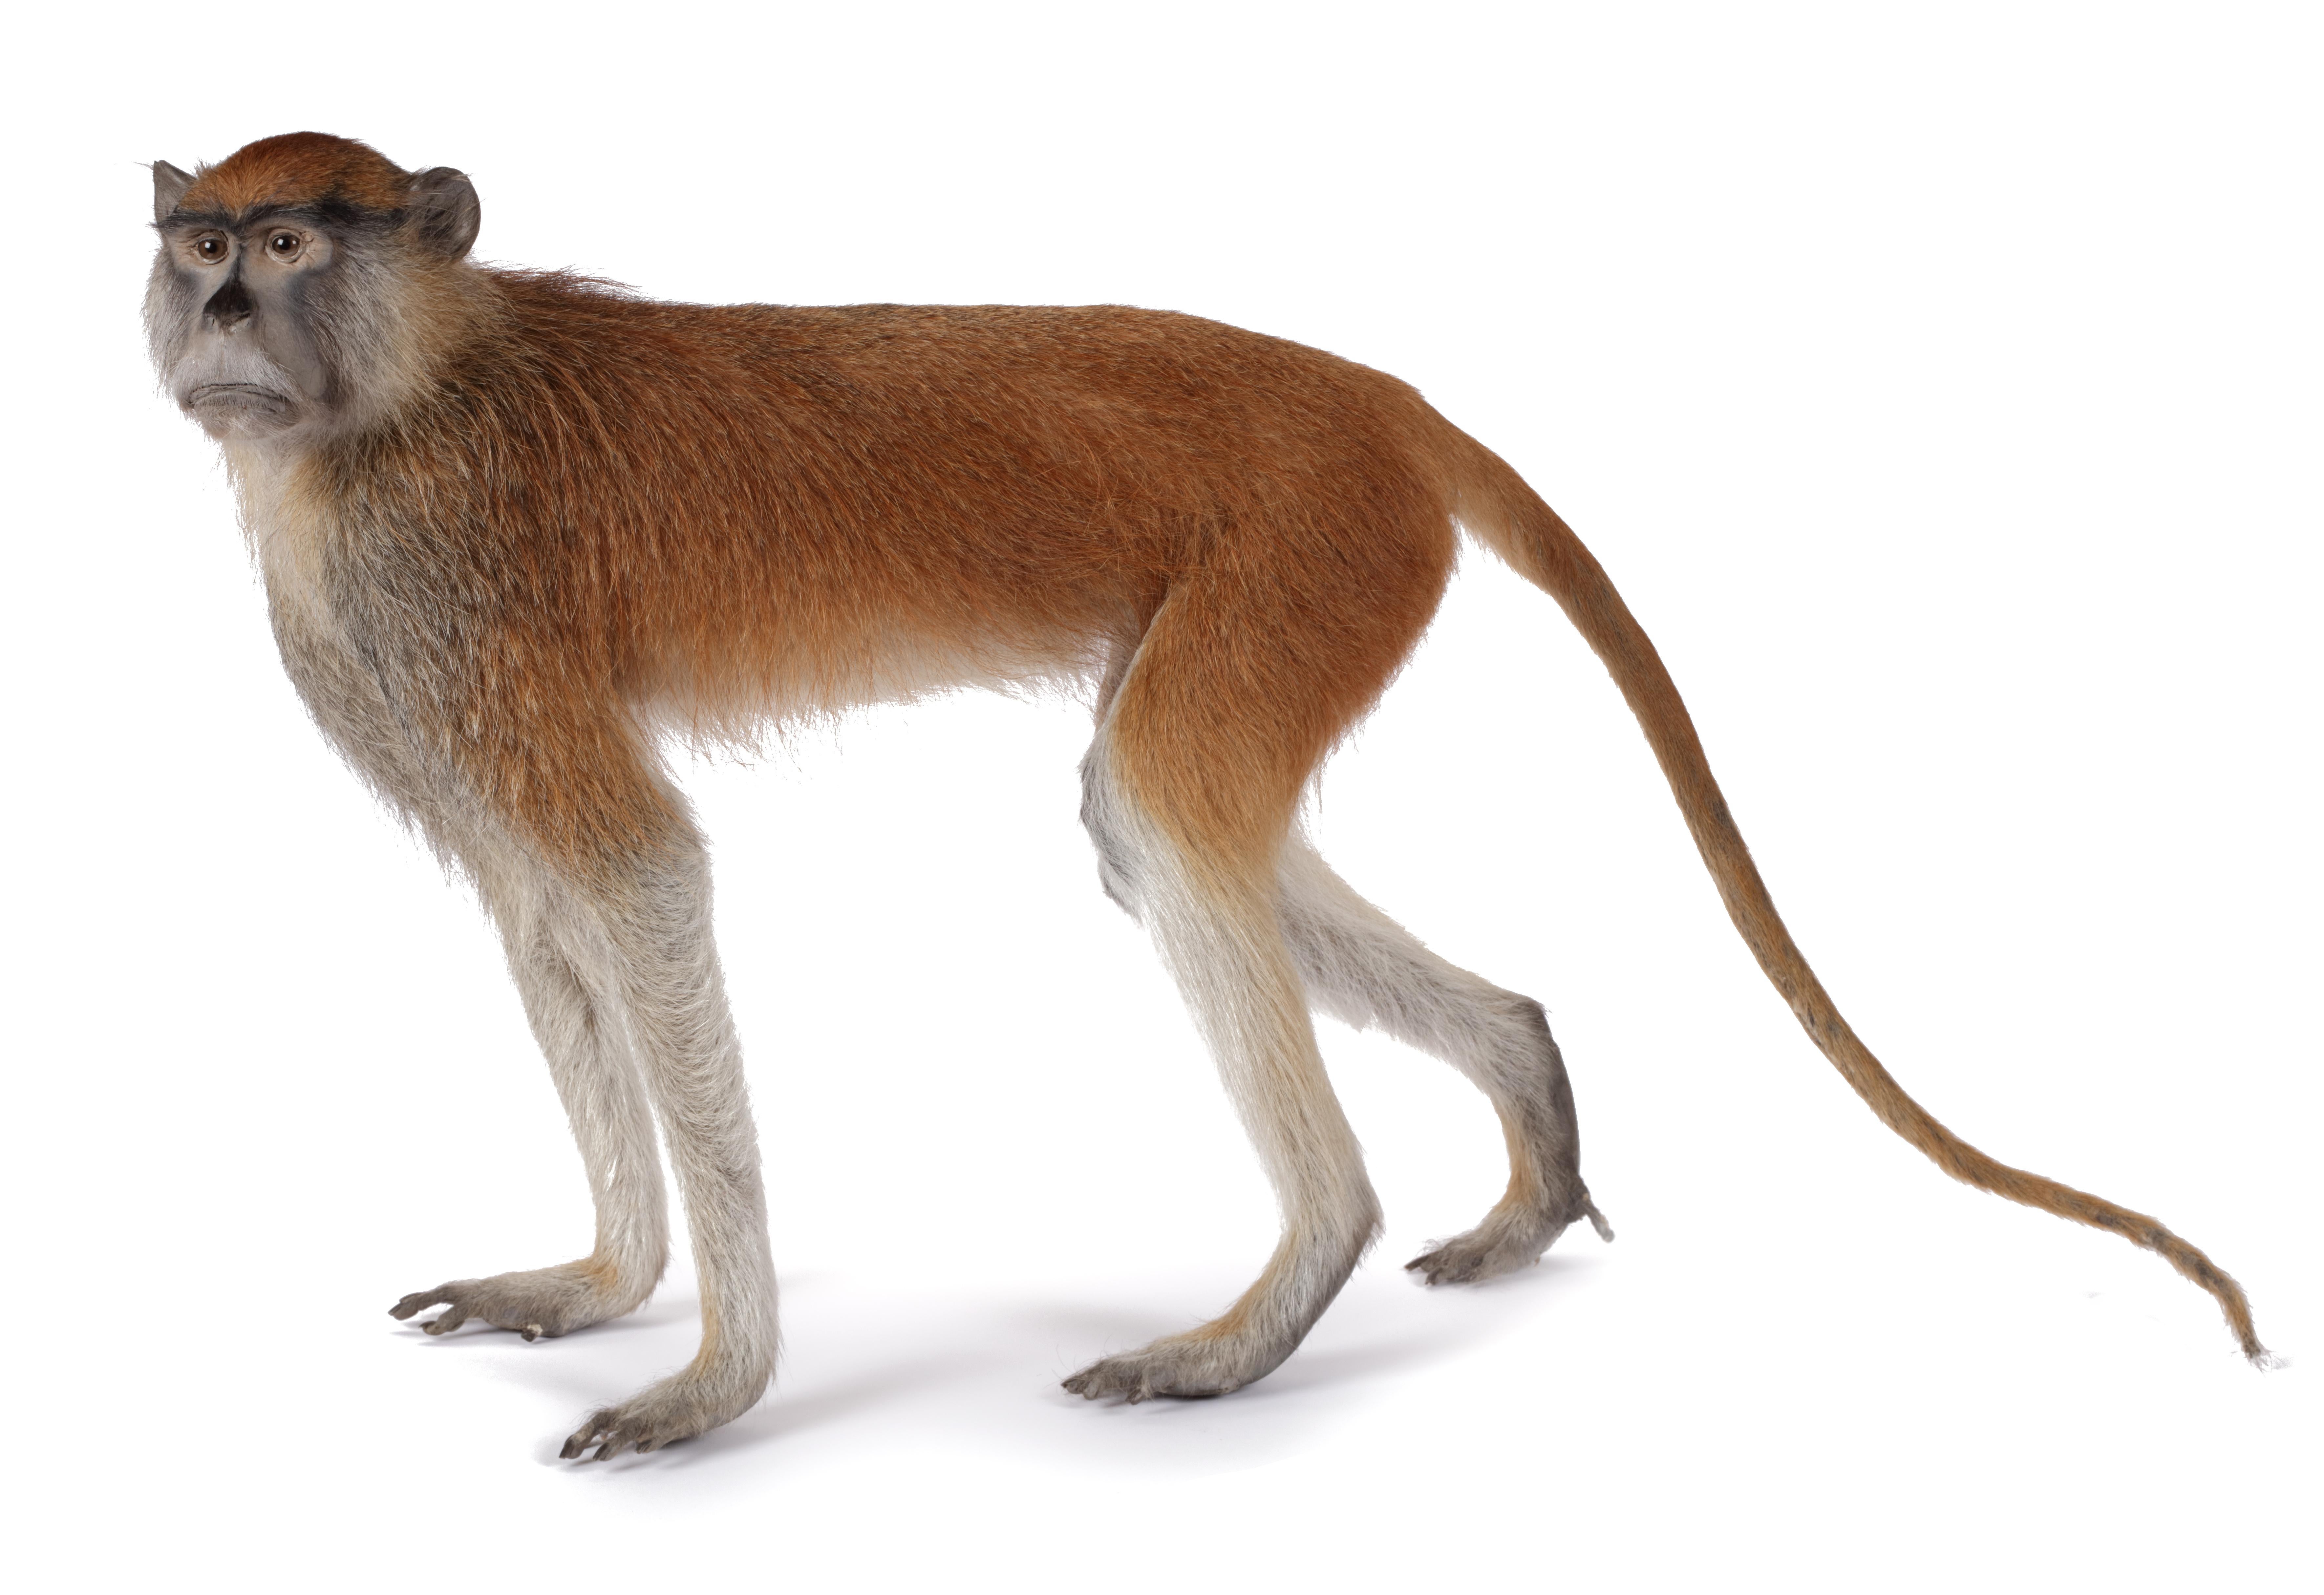 Ein präparierter roter Patas oder Husarenaffe (Erythrocebus patas)

Mitte des 20. Jahrhunderts, einschließlich CITES

H. ca. 40 cm

Provenienz:
Privatsammlung, die Niederlande


Der Patas-Affe lebt in Gruppen von bis zu 60 Individuen.